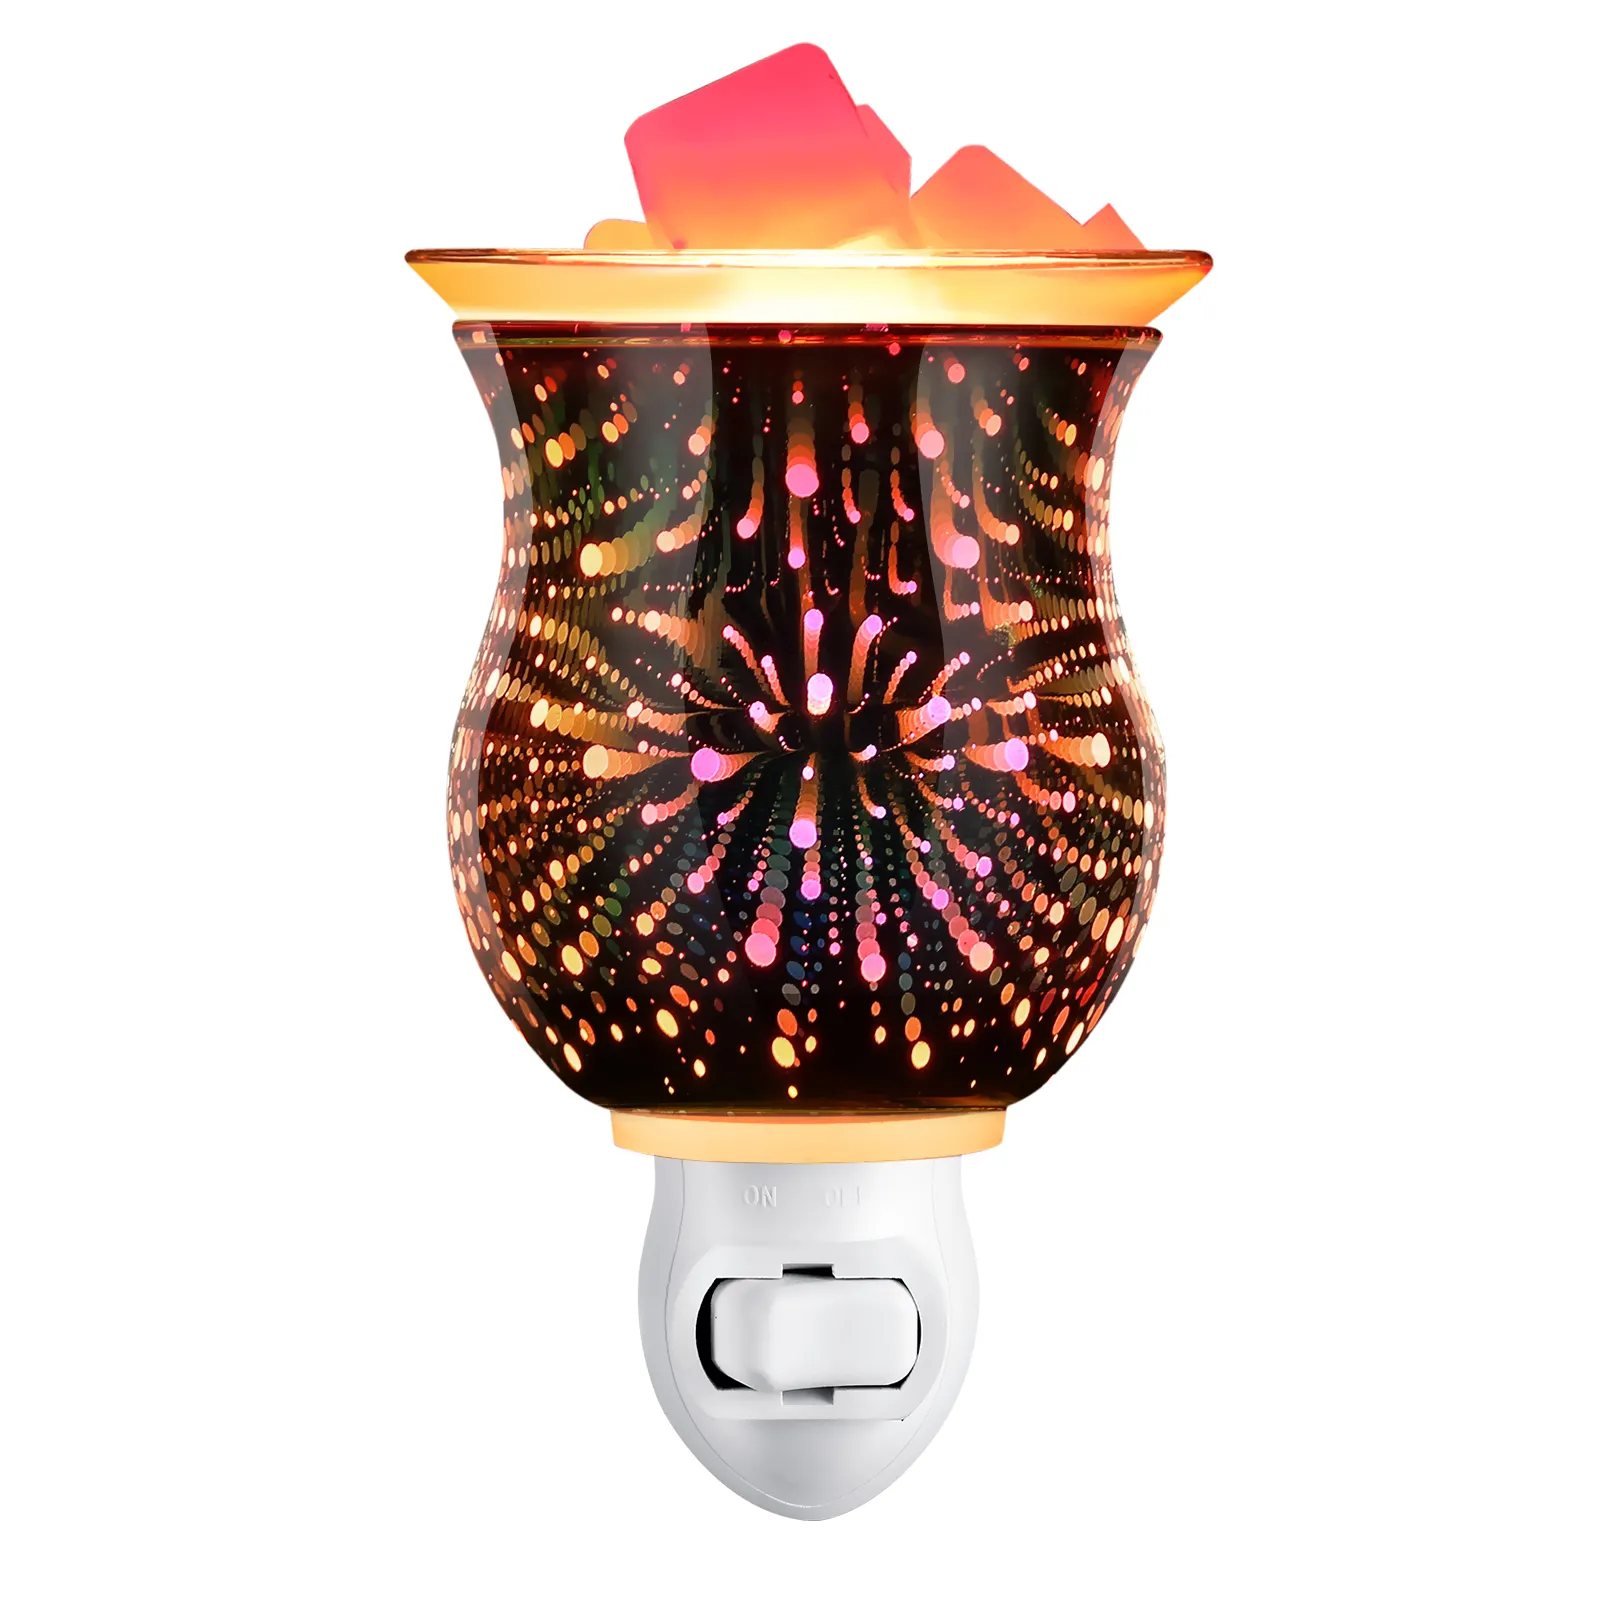 Chauffe-cire 3D avec couvercle en verre amovible, brûleur d'arôme pour la maison